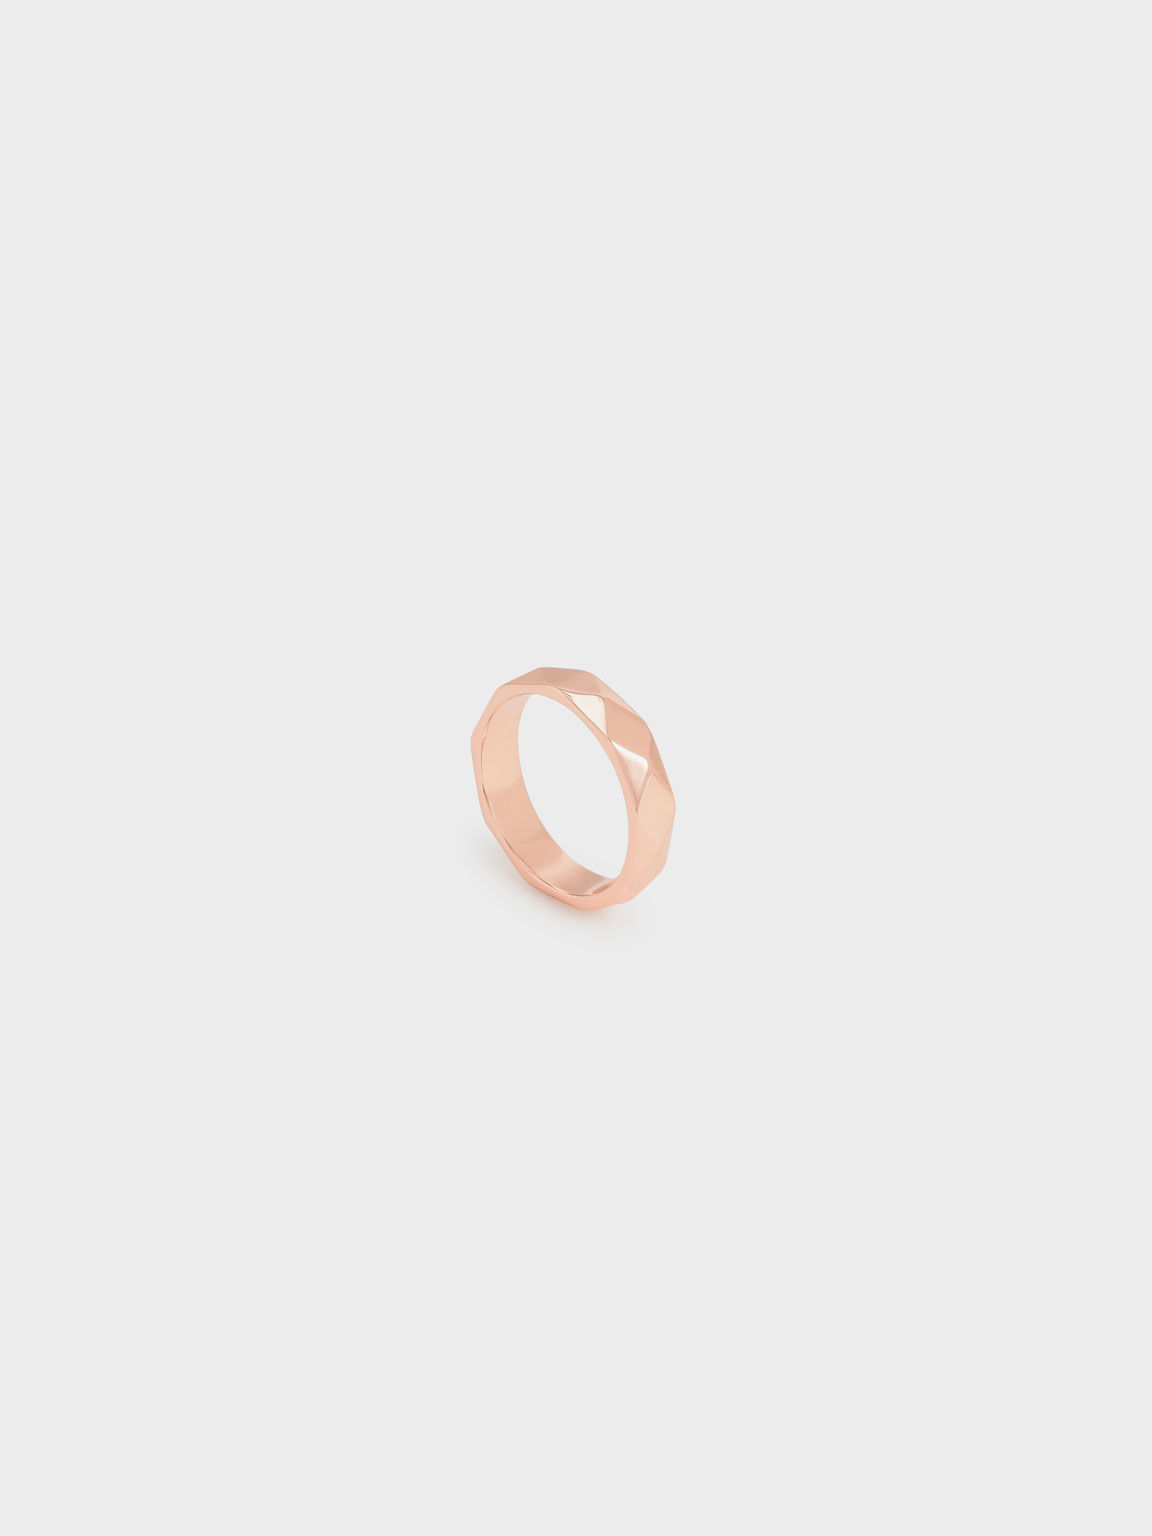 Geometric Ring, Rose Gold, hi-res